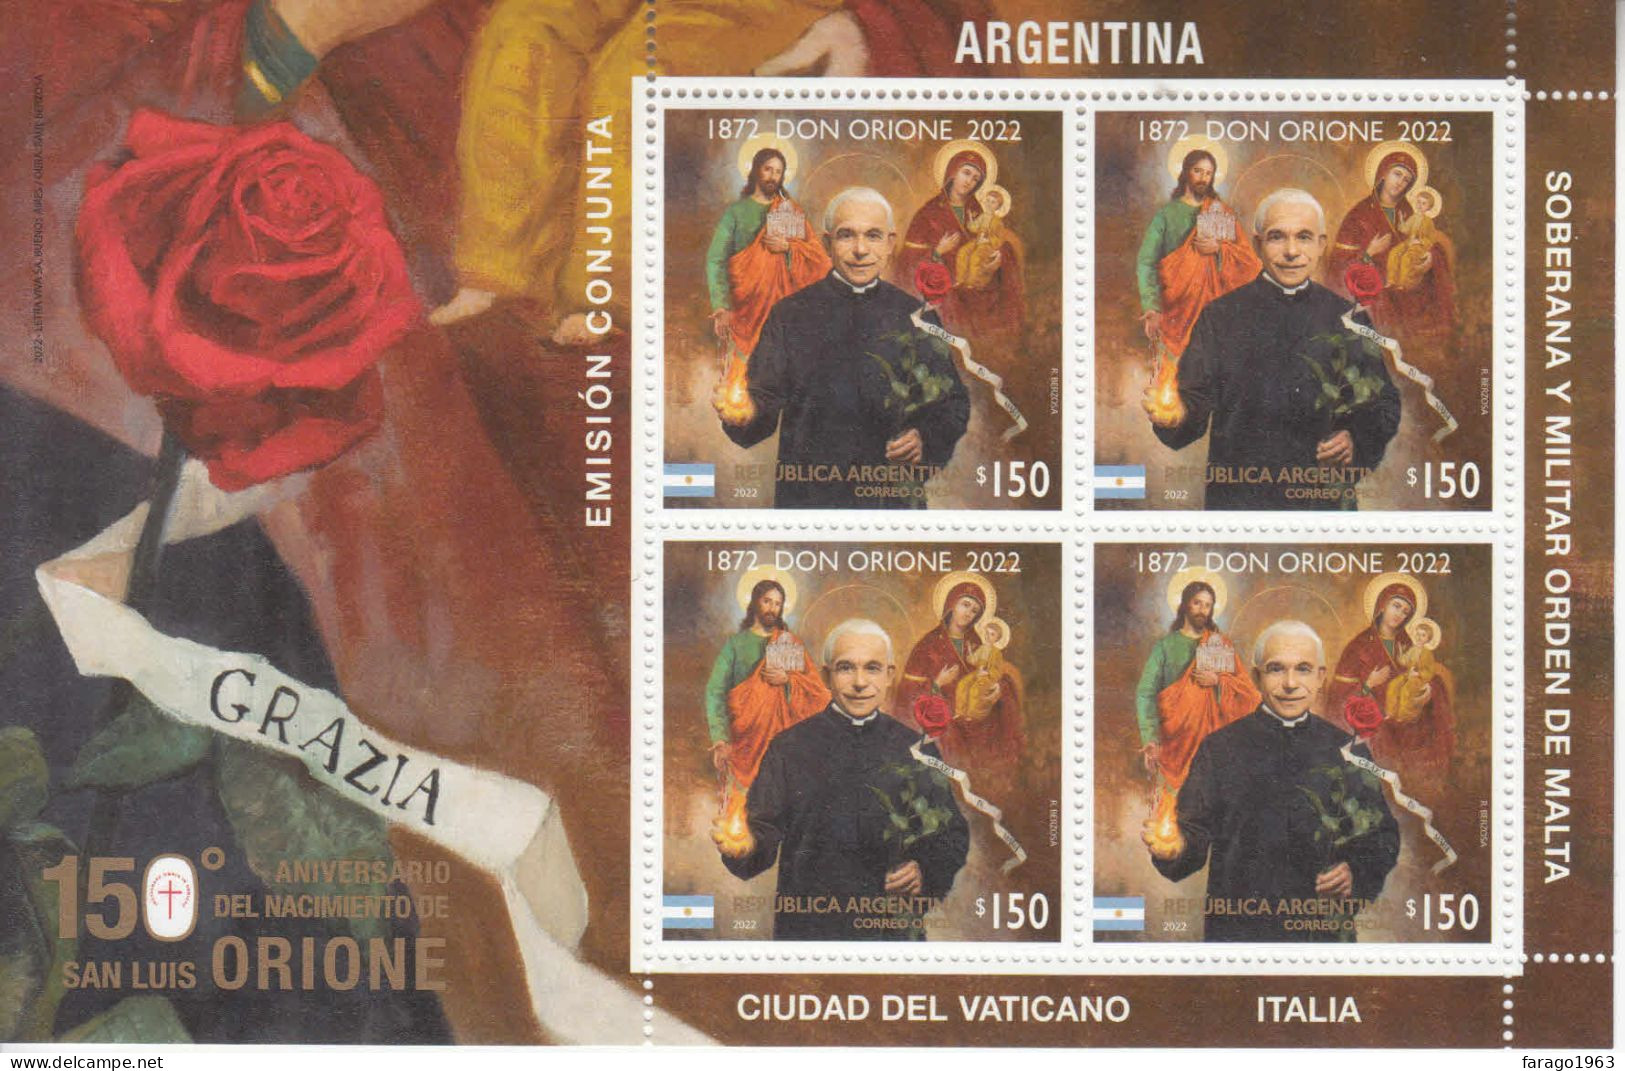 2022 Argentina Don Orione JOINT ISSUE Vatican Souvenir Sheet MNH - Ongebruikt